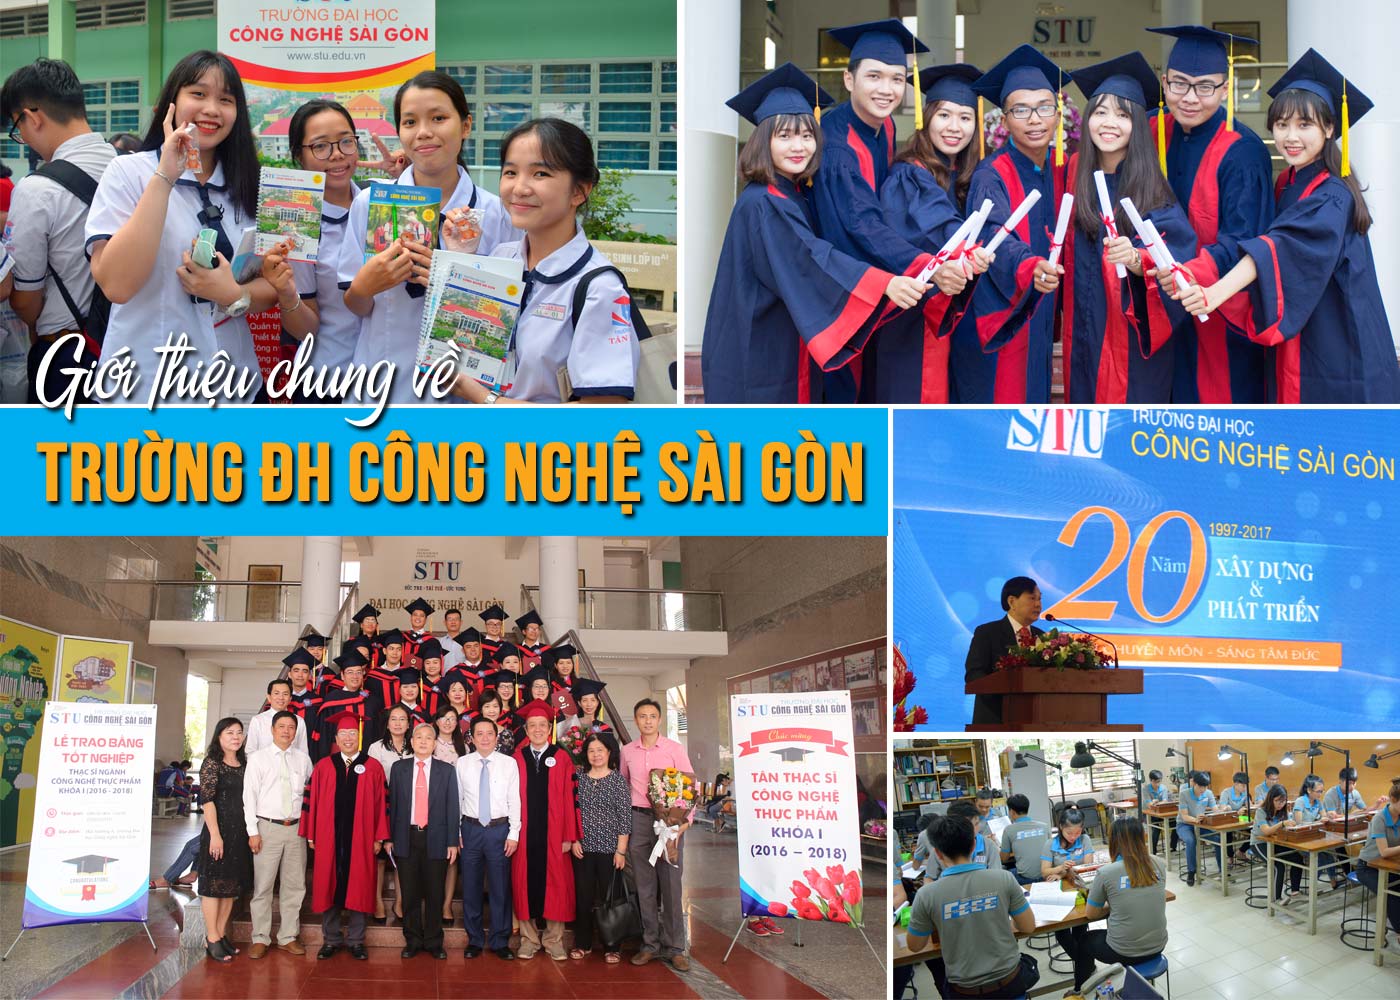 Giới thiệu chung về Trường ĐH Công nghệ Sài Gòn (STU) - Ảnh 1